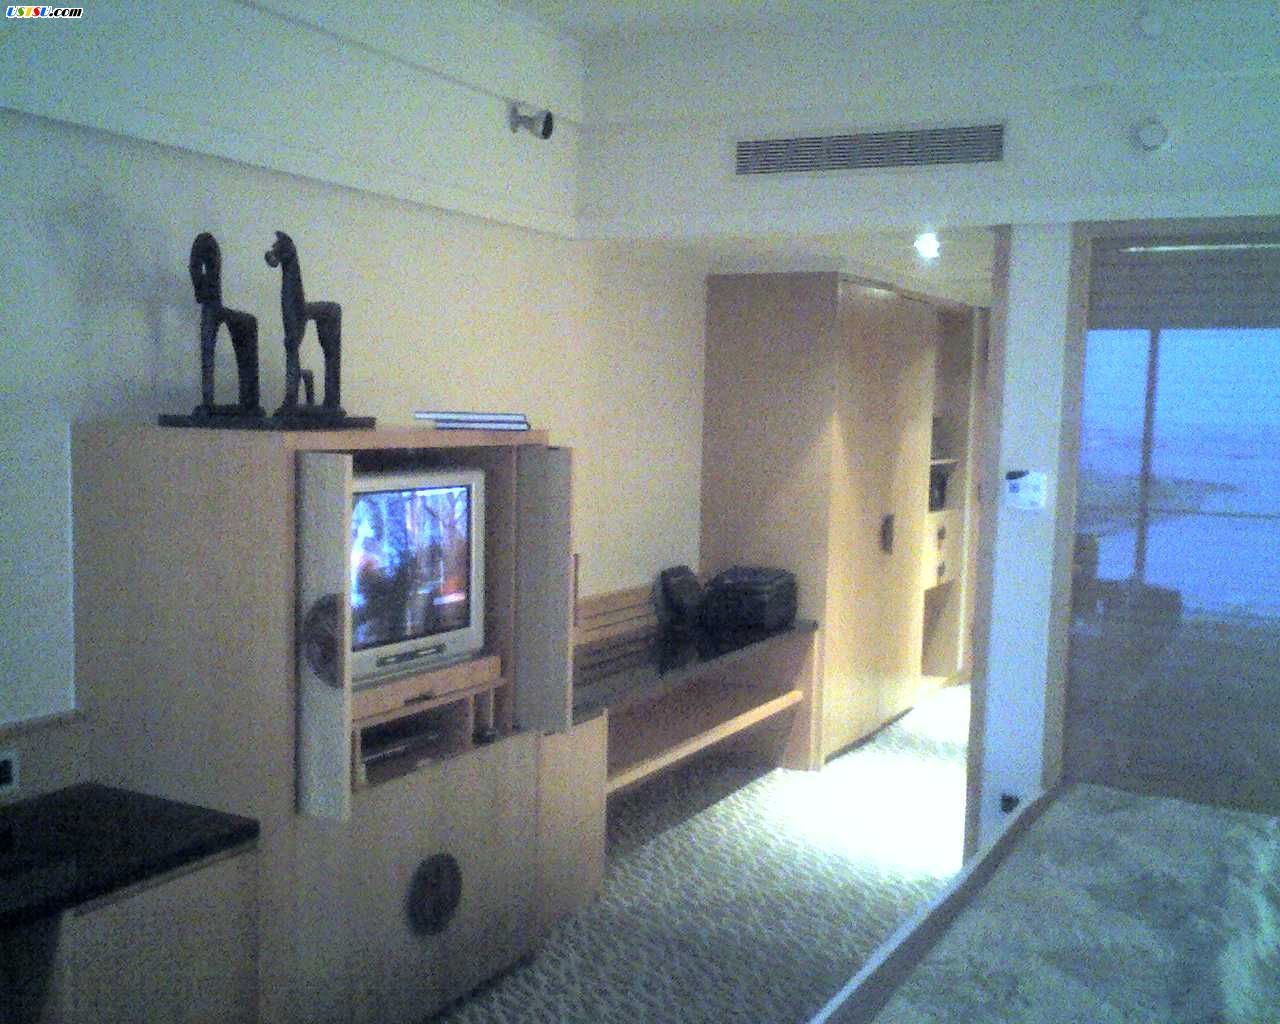 Oriental_Room2.jpg